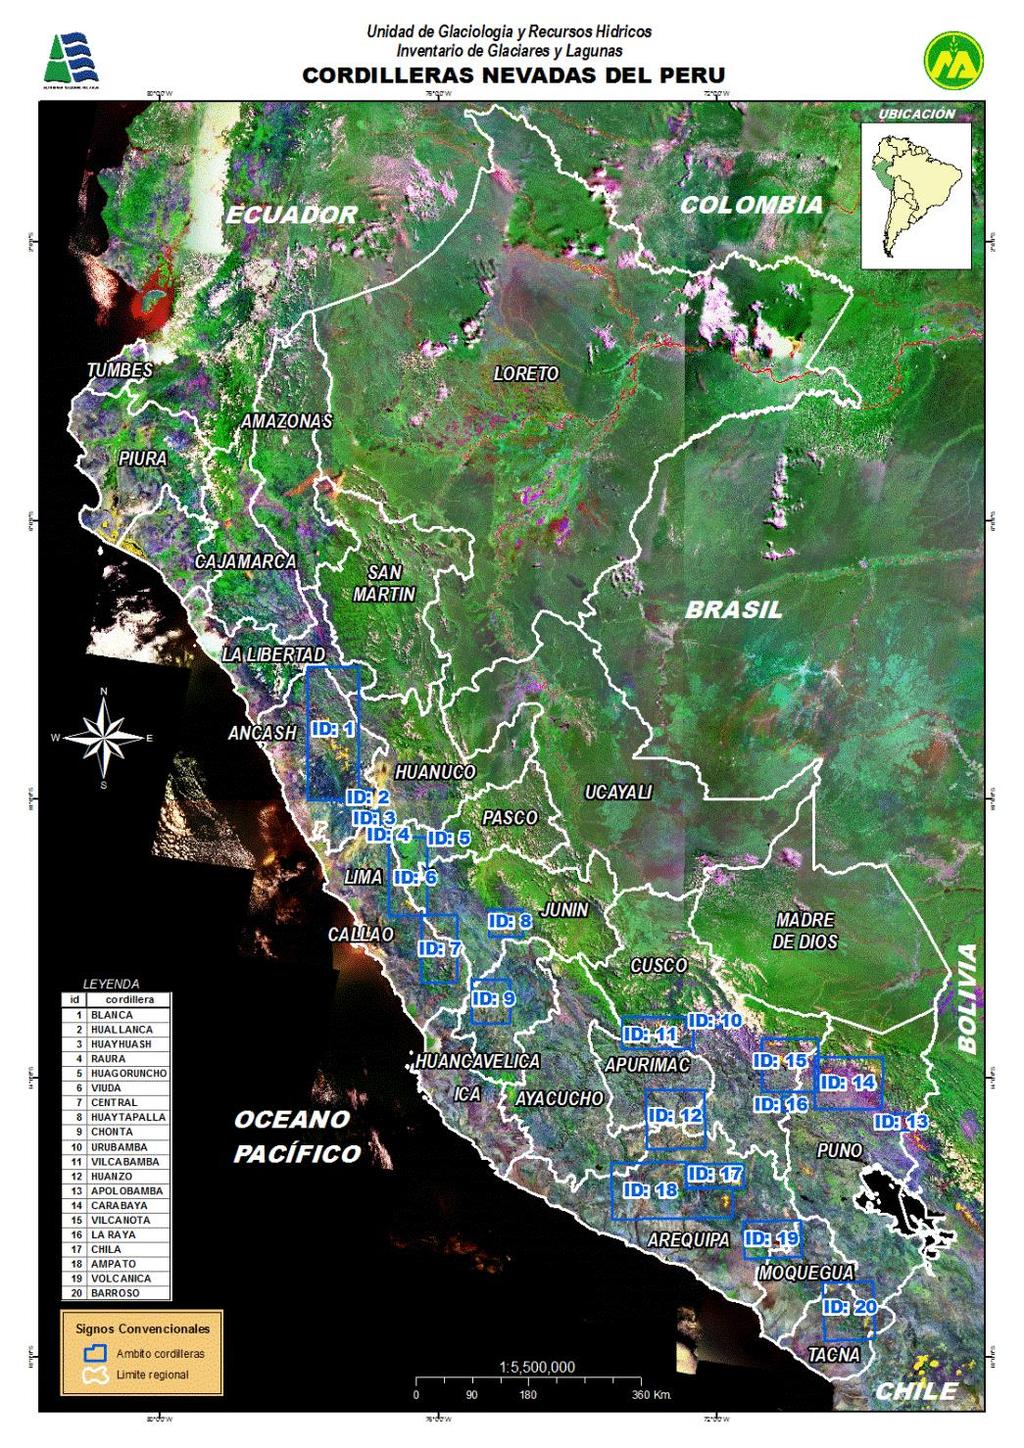 Cordilleras Nevadas del Perú Distribución de las 19 cordilleras nevadas 1.- Blanca del Perú (755) 2.- Huallanca (43) 3.- Huayhuash (144) 4.- Raura (102) 5.- Huagoruncho (41) 6.- La Viuda (165) 7.